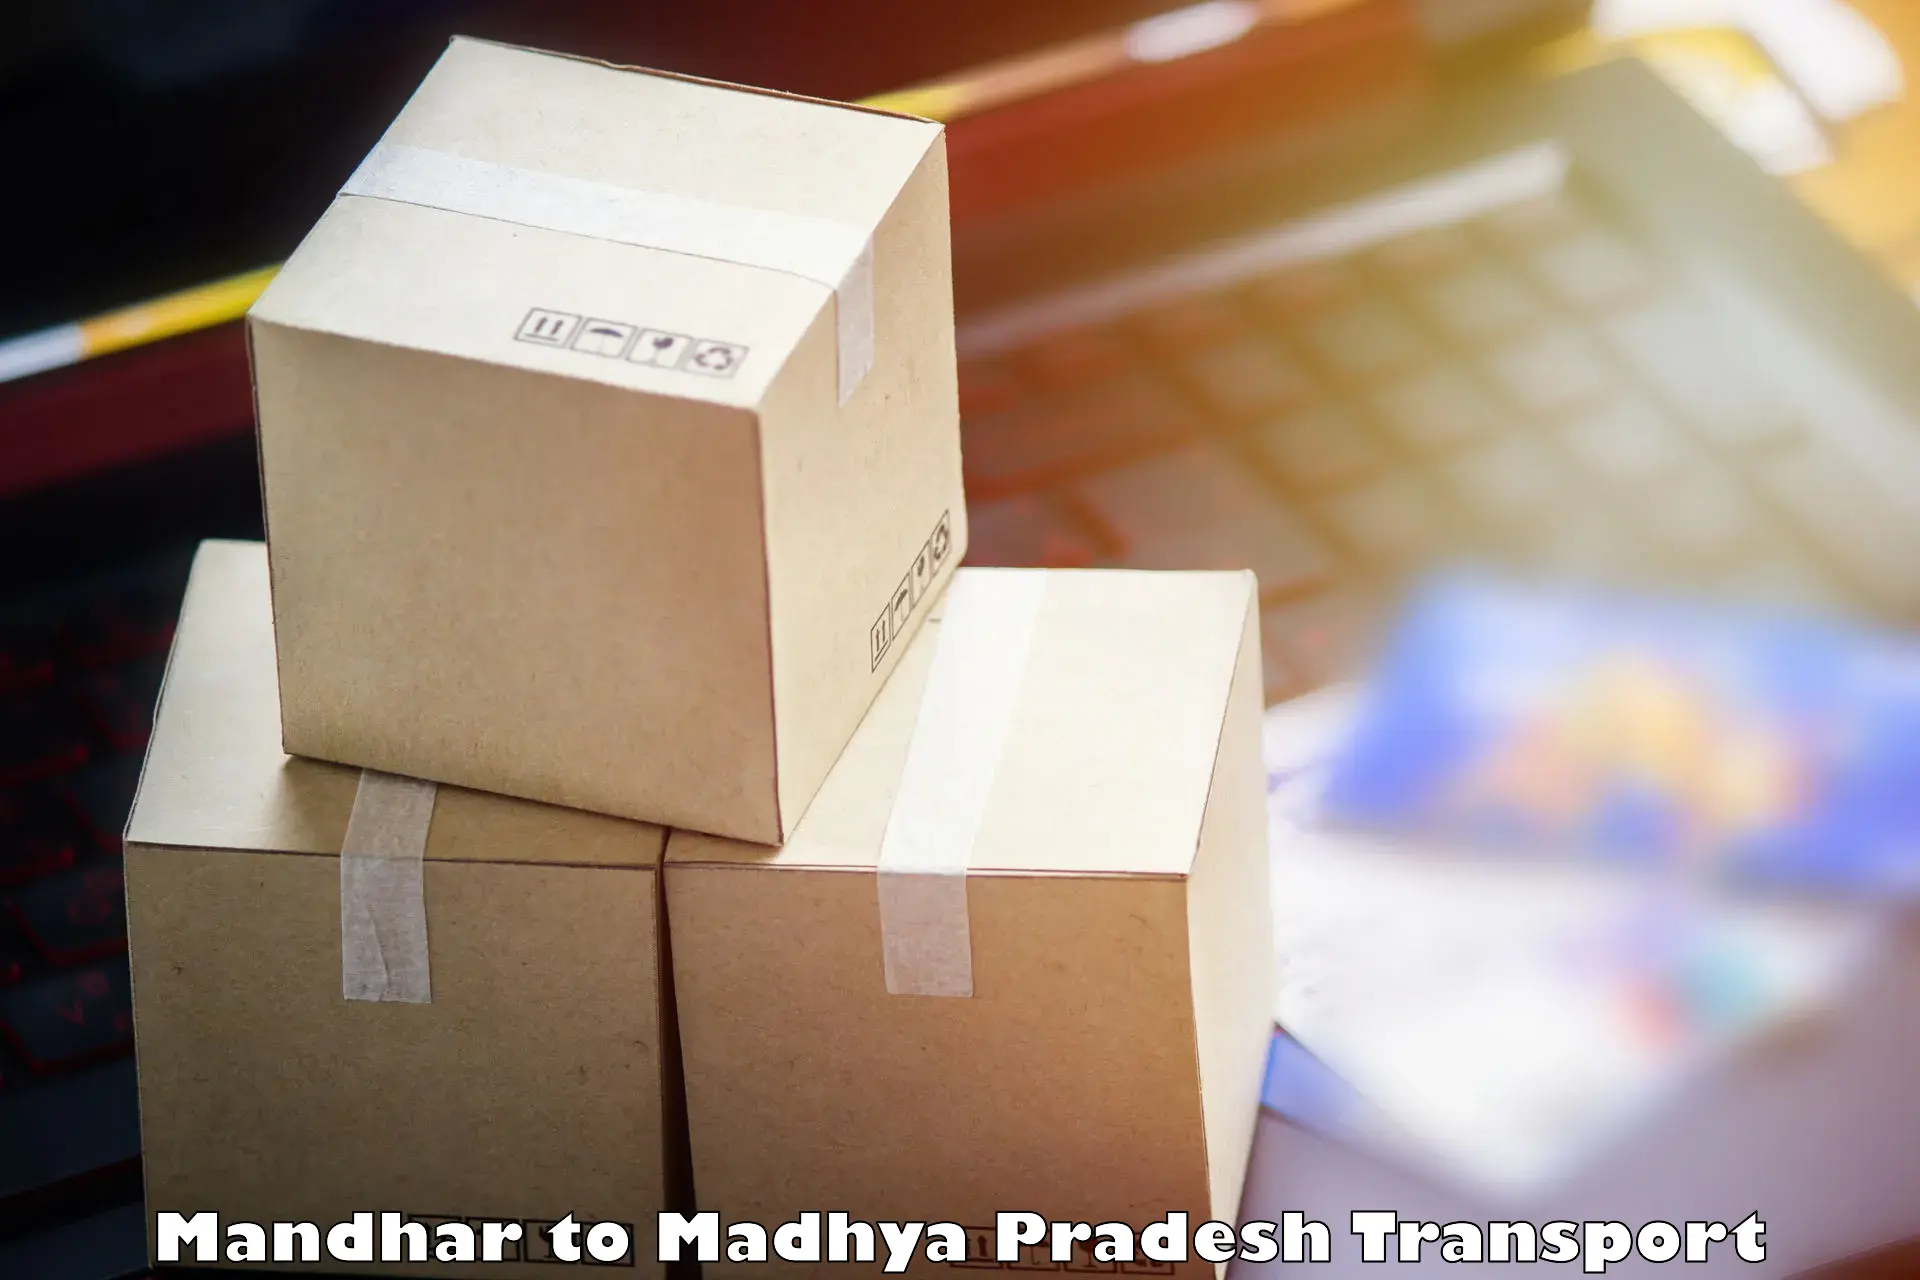 Part load transport service in India Mandhar to Bichhiya